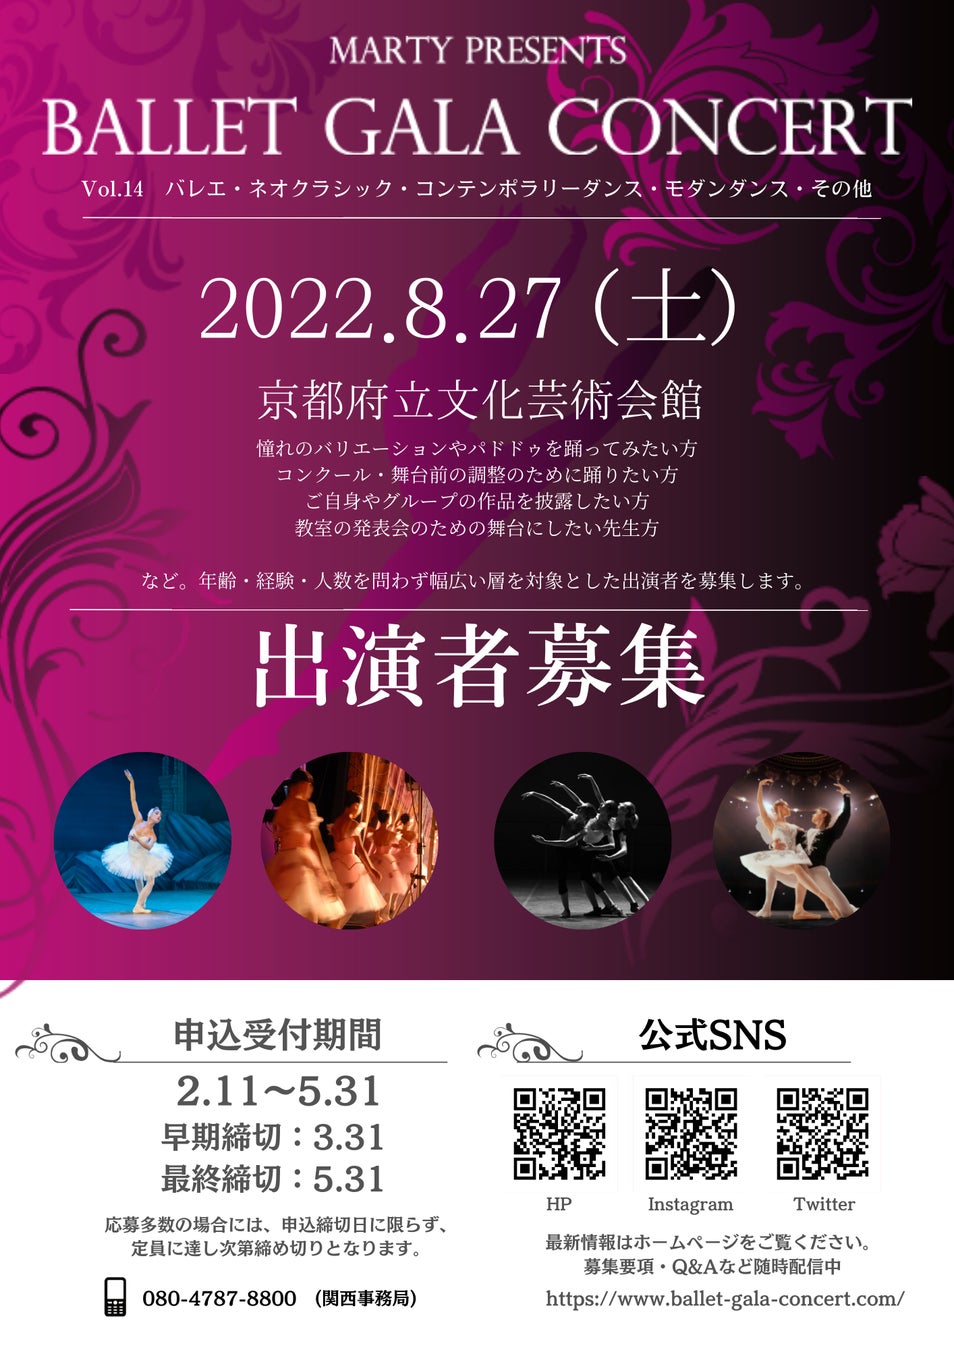 【申込開始】みんなのバレエガラコンサートvol.14 in京都 いよいよチケット申込開始！2022年8月27日(土)京都府立文化芸術会館にて開催のサブ画像1